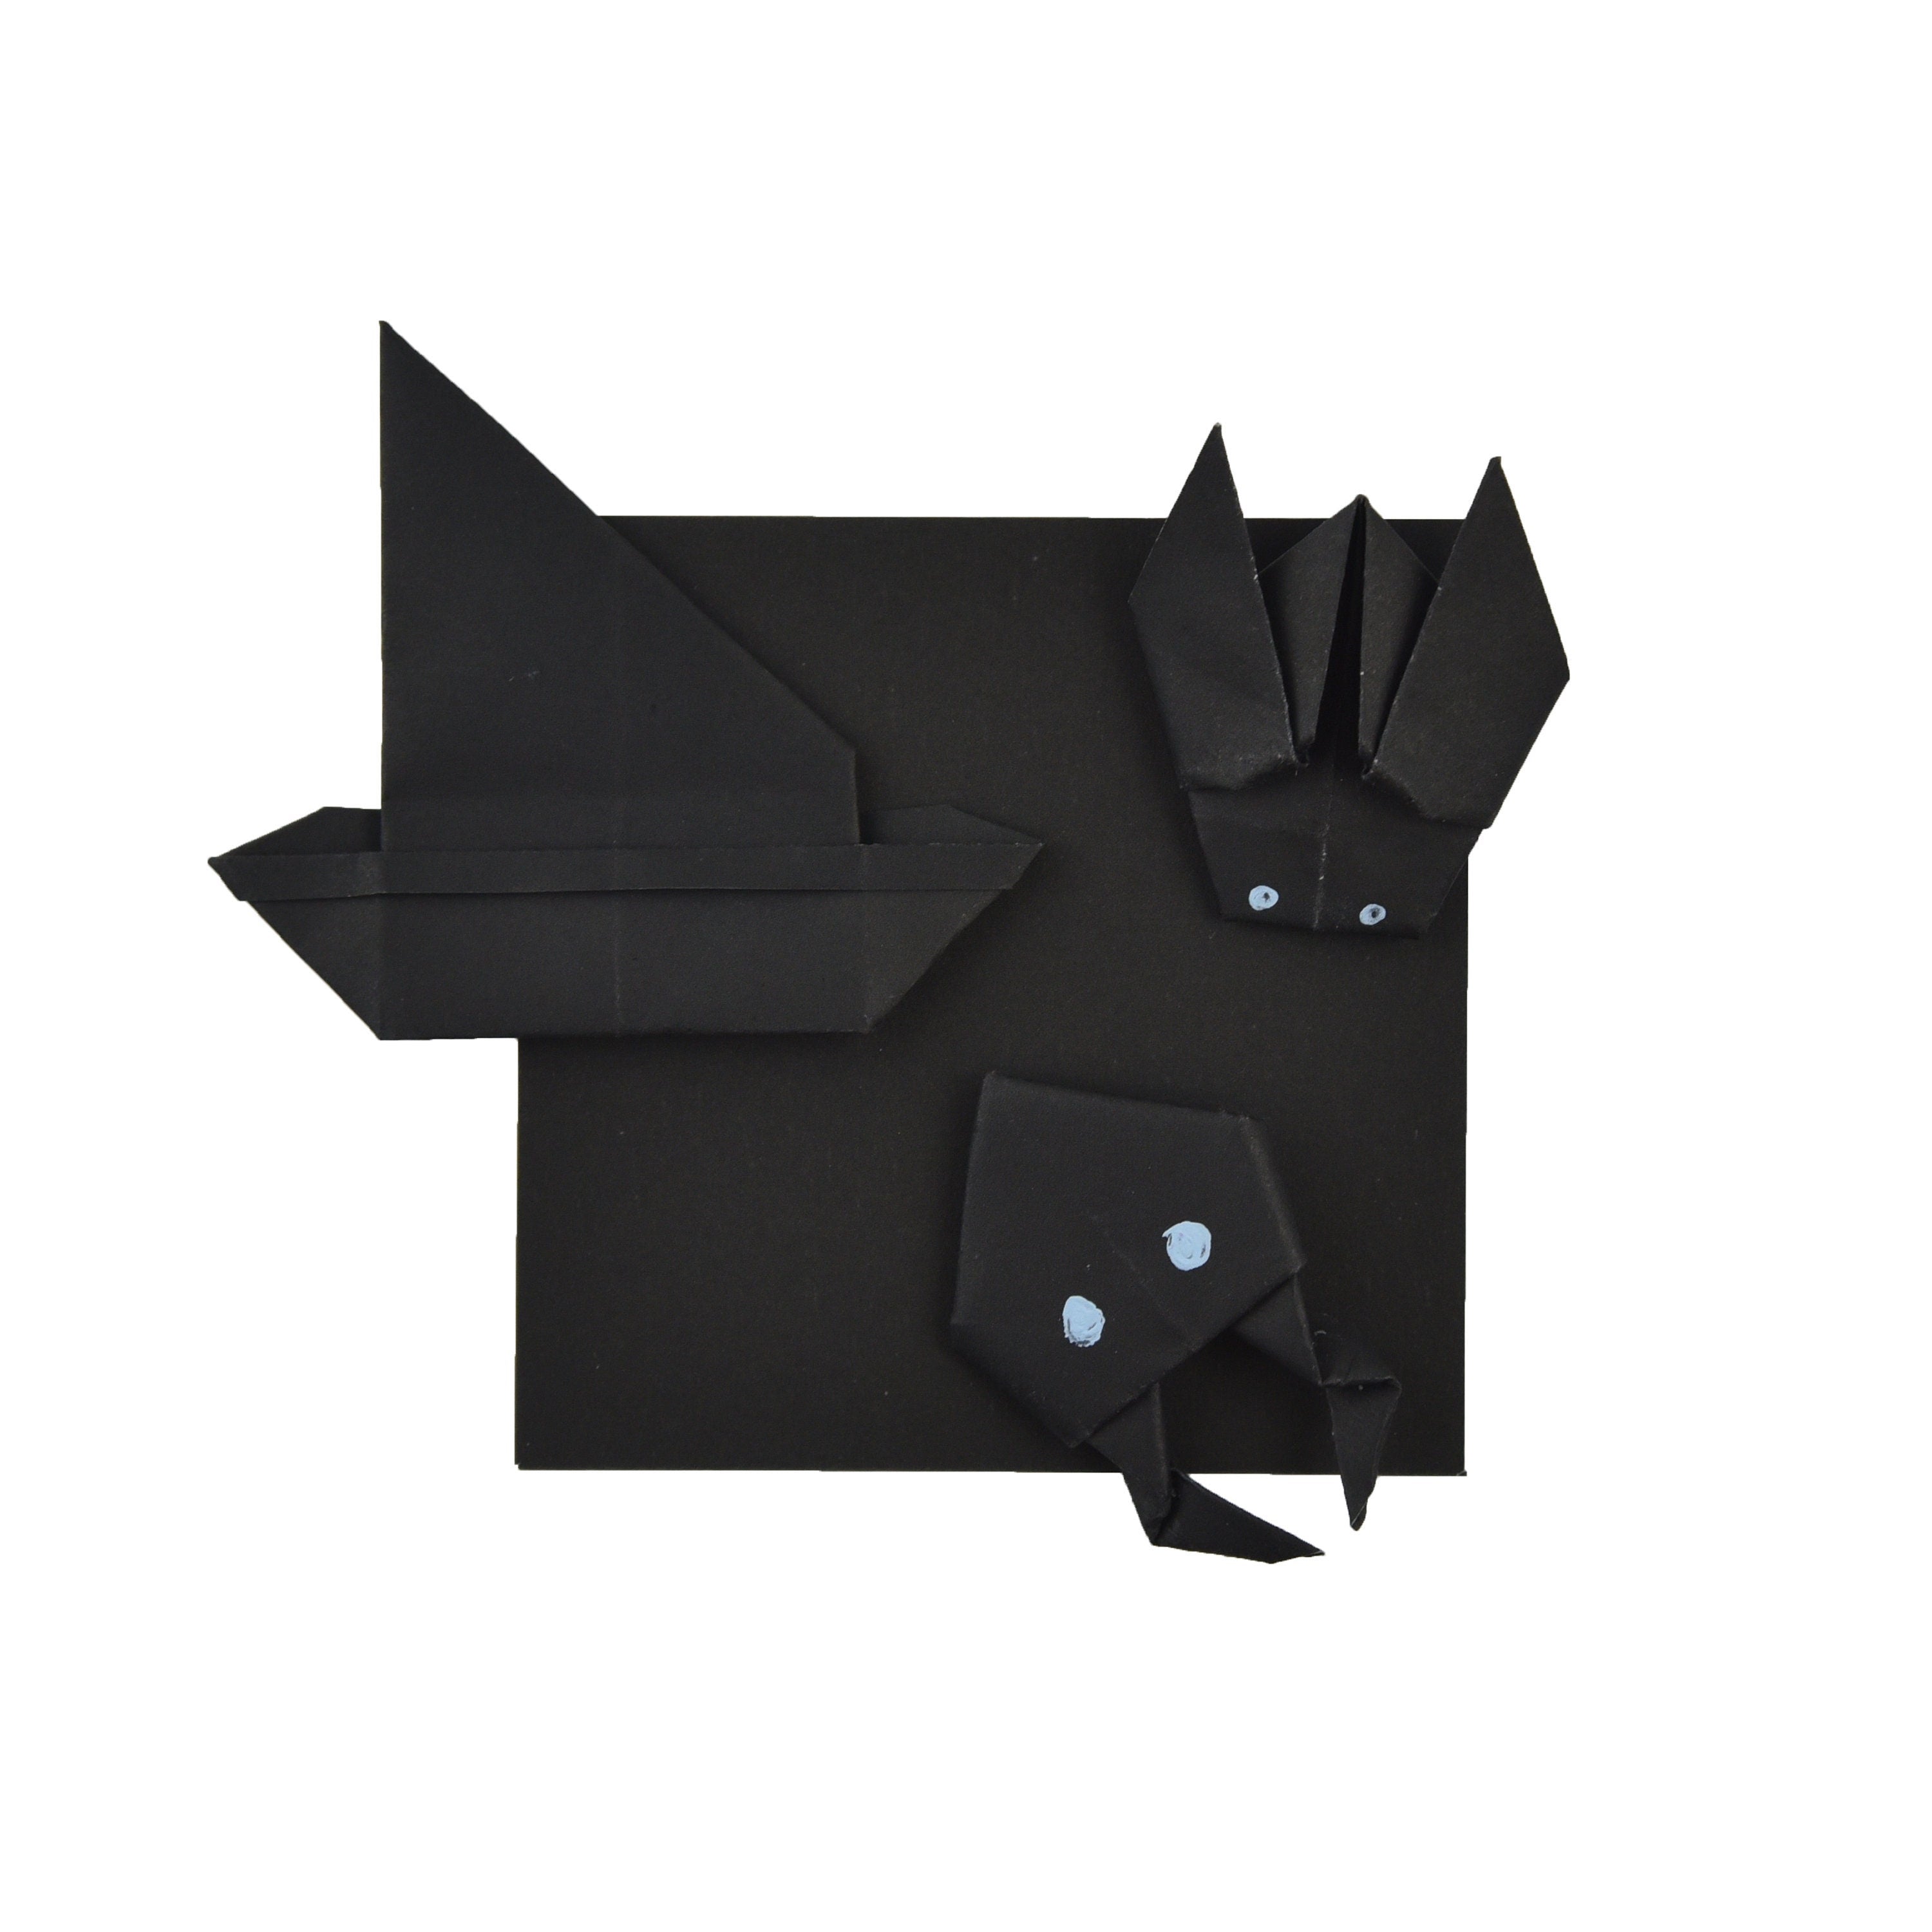 100 hojas de papel de origami negras - 3x3 pulgadas - Paquete de papel cuadrado para plegar, grullas de origami y decoración - S11